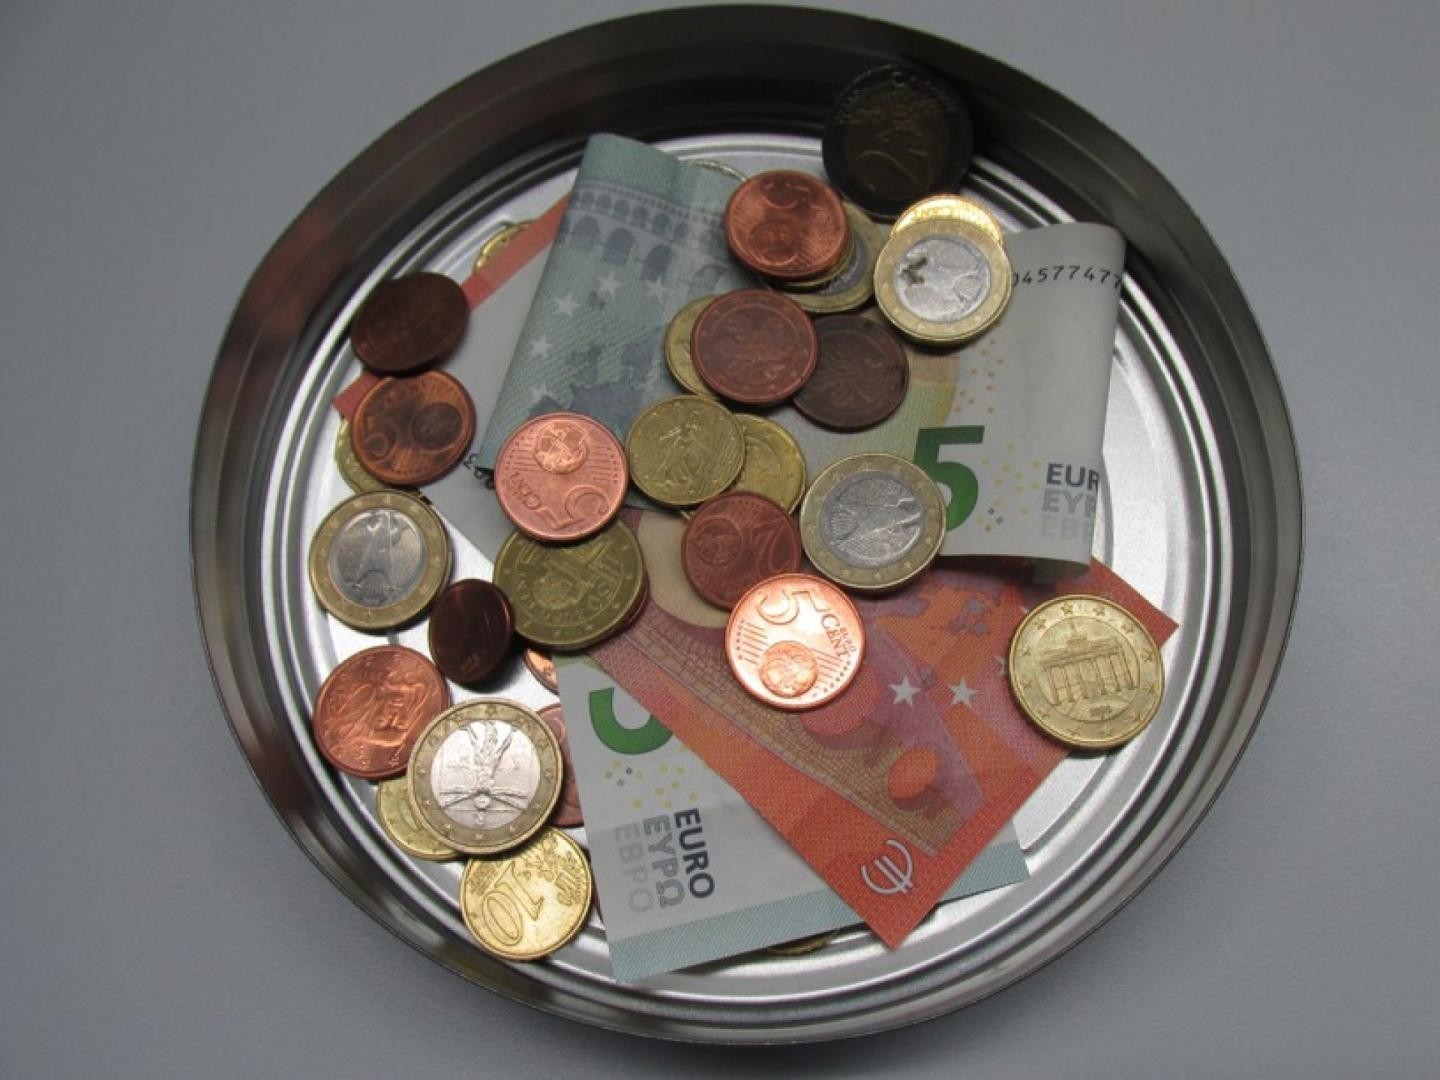 Geöffnete Blechdose mit Münzgeld und Geldscheinen